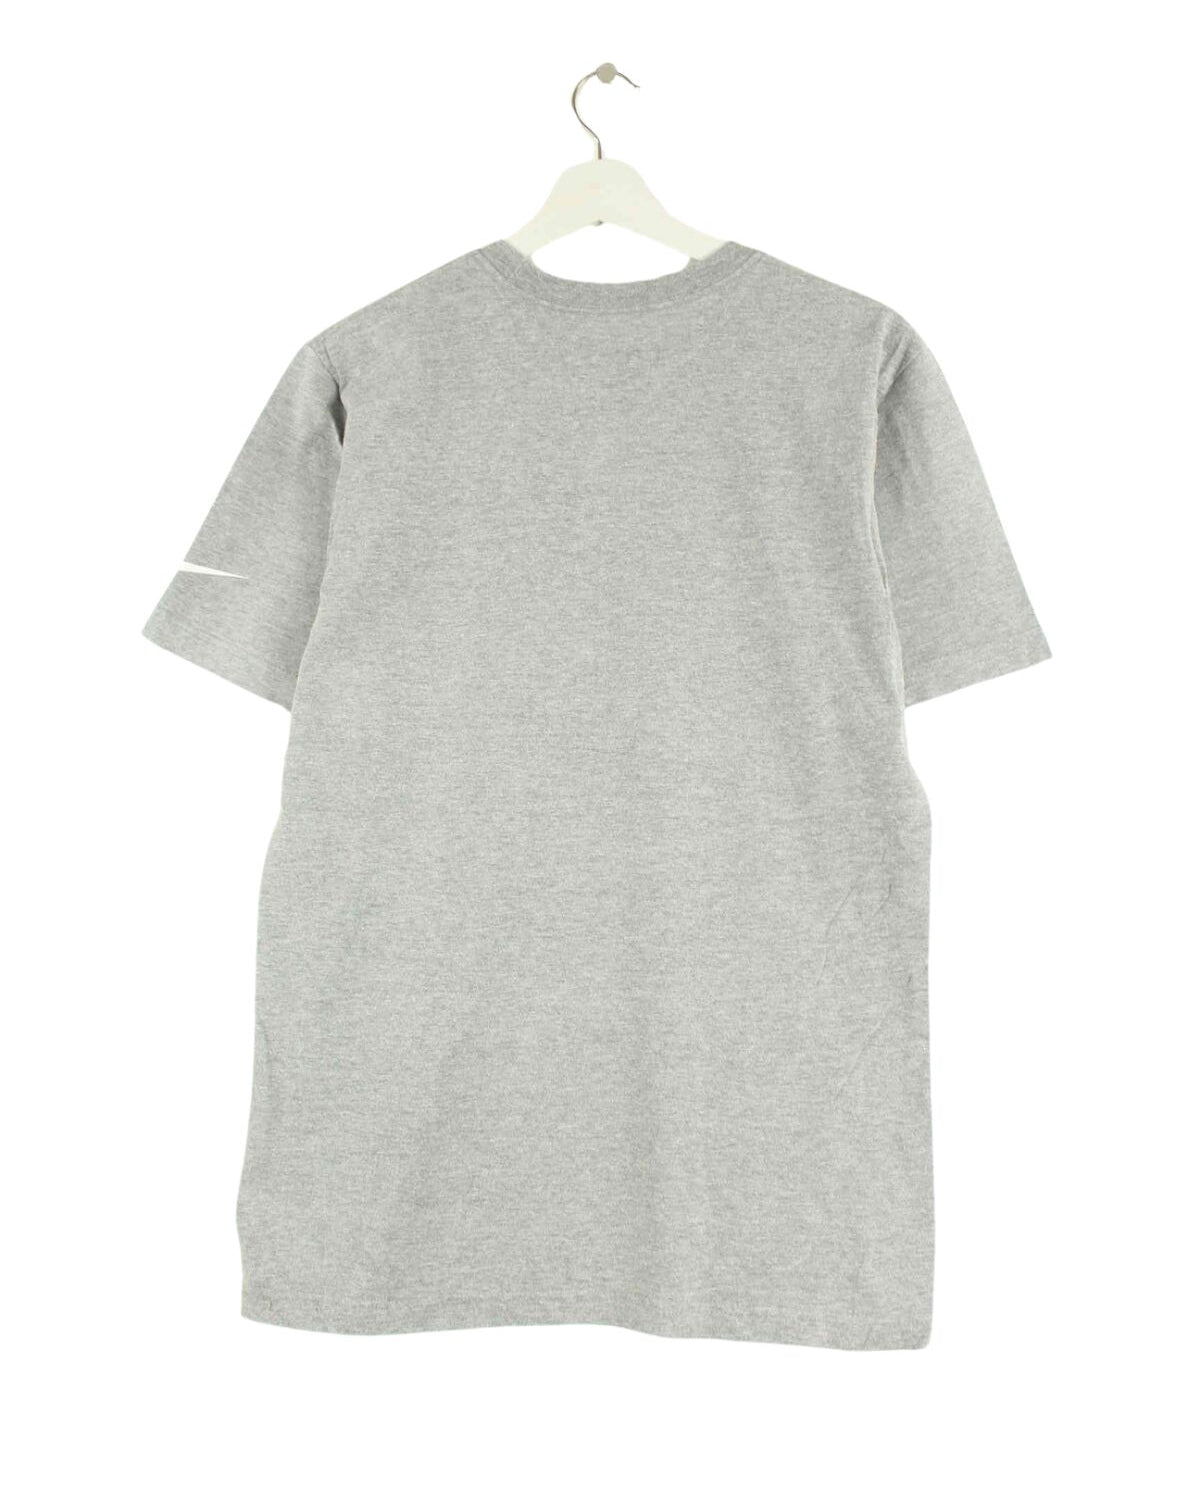 Nike Redskins Print T-Shirt Grau M (back image)